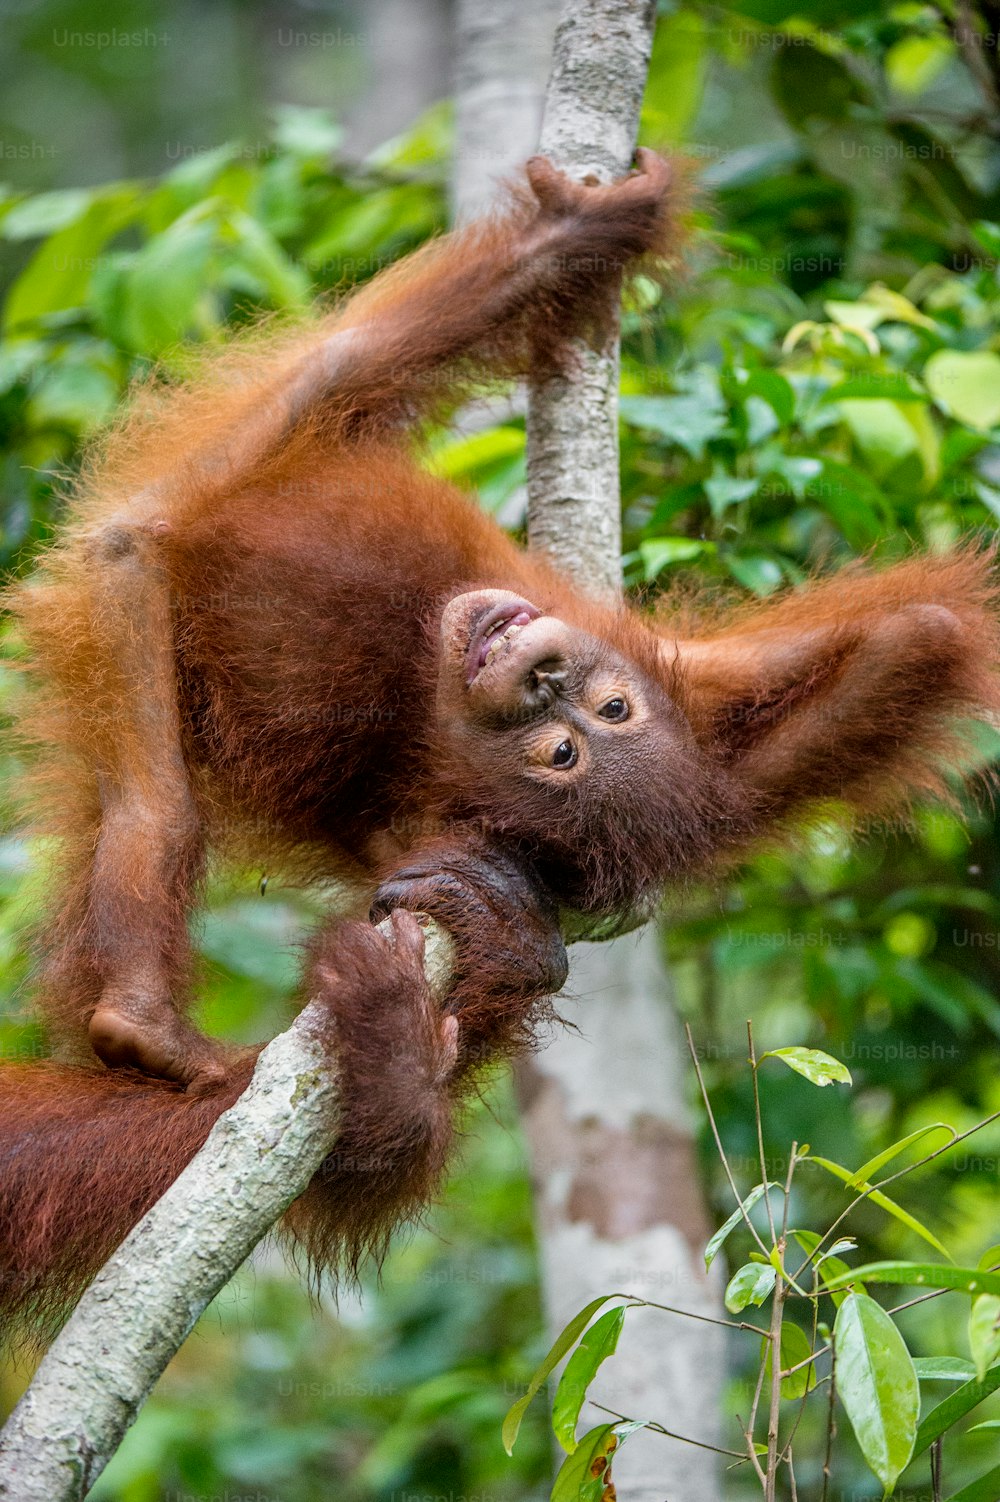 Cría de orangután en un hábitat natural. Orangután de Borneo (Pongo pygmaeus wurmmbii) en la naturaleza. Selva tropical de la isla de Borneo. Indonesia.